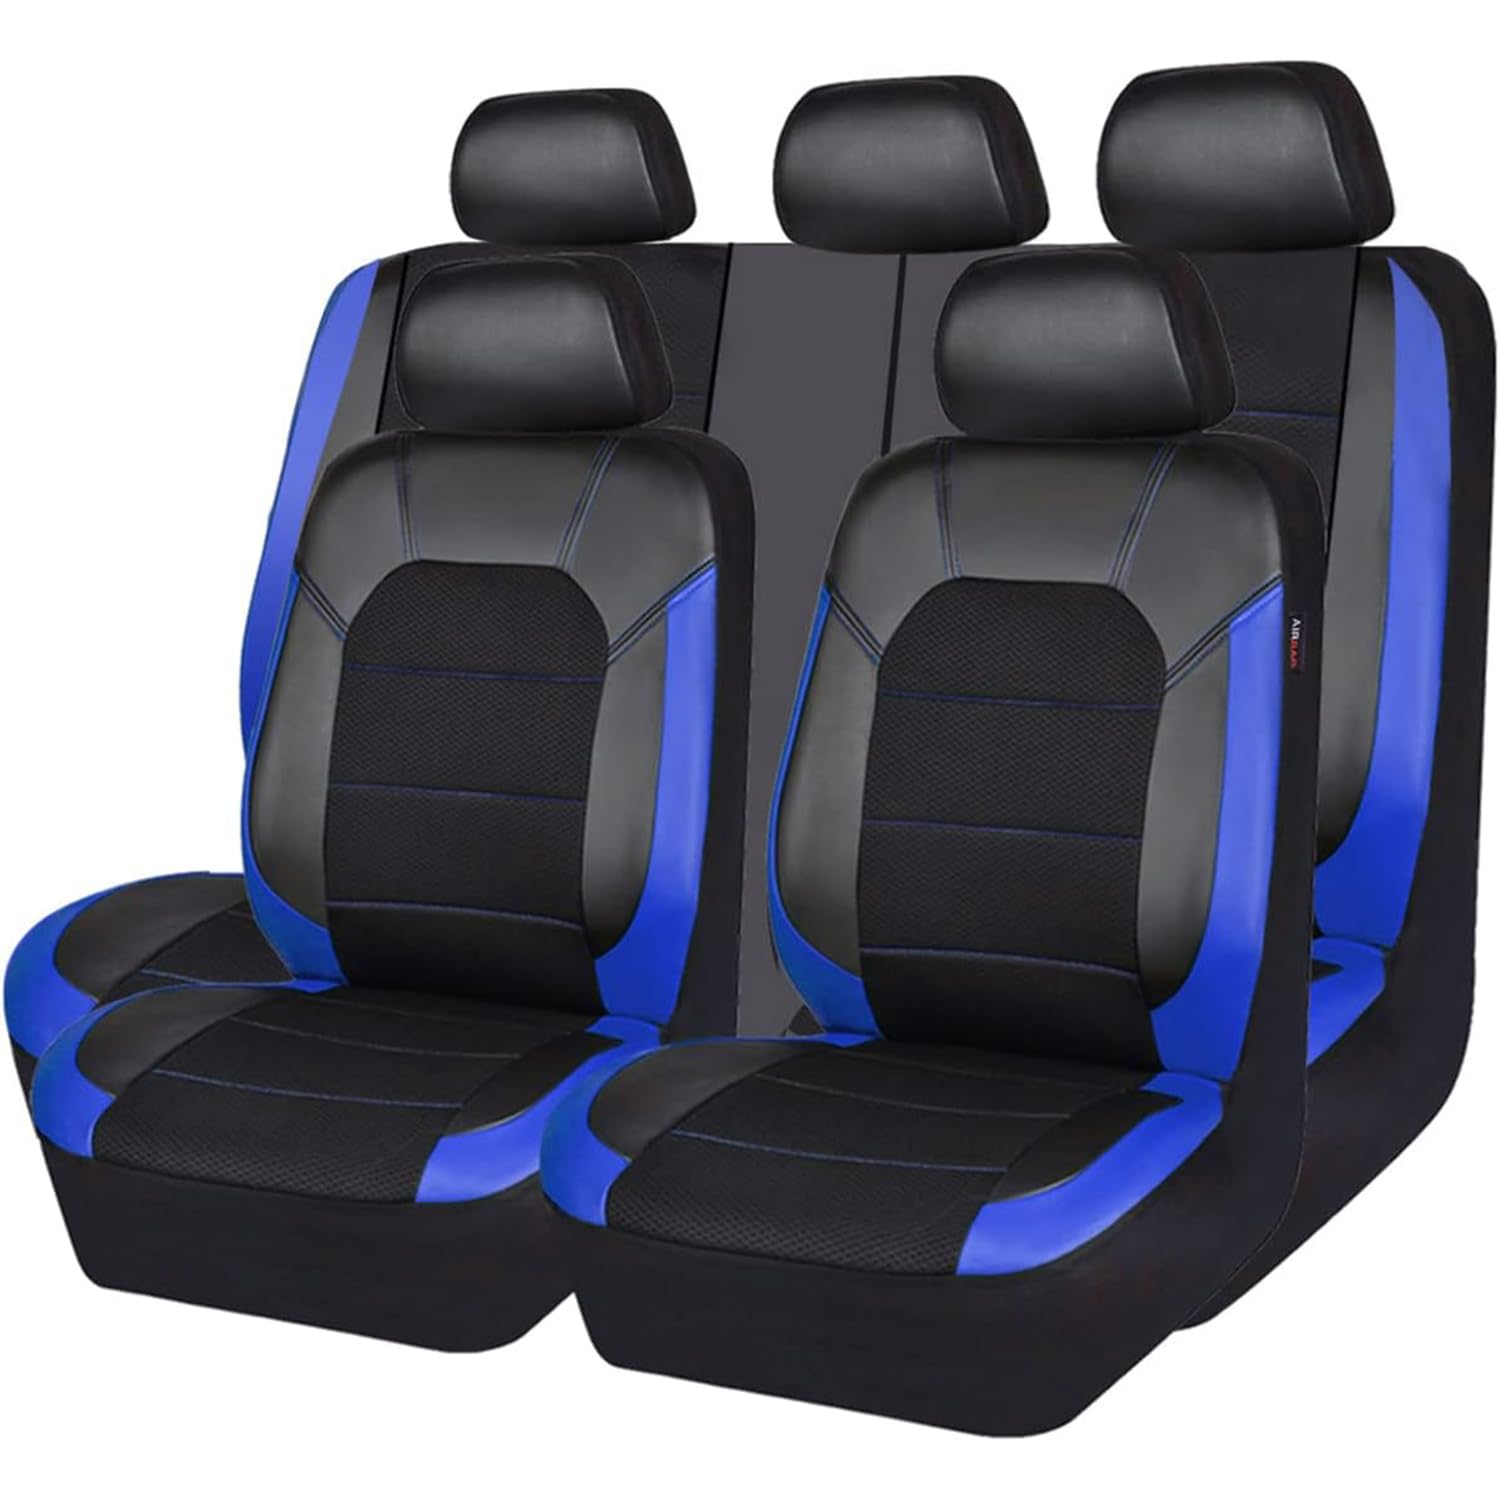 EXBERT Auto-Sitzbezug für Mercedes Benz M Class ML W166 W164 W163 SUV ML 250 / ML 300 / ML 350 / ML 400 / ML 450, 9-teiliges Set Sitzbezug Komplett-Set, PKW-Sitzbezüge, Sitzschoner 5 Sitzplätze,C von EXBERT